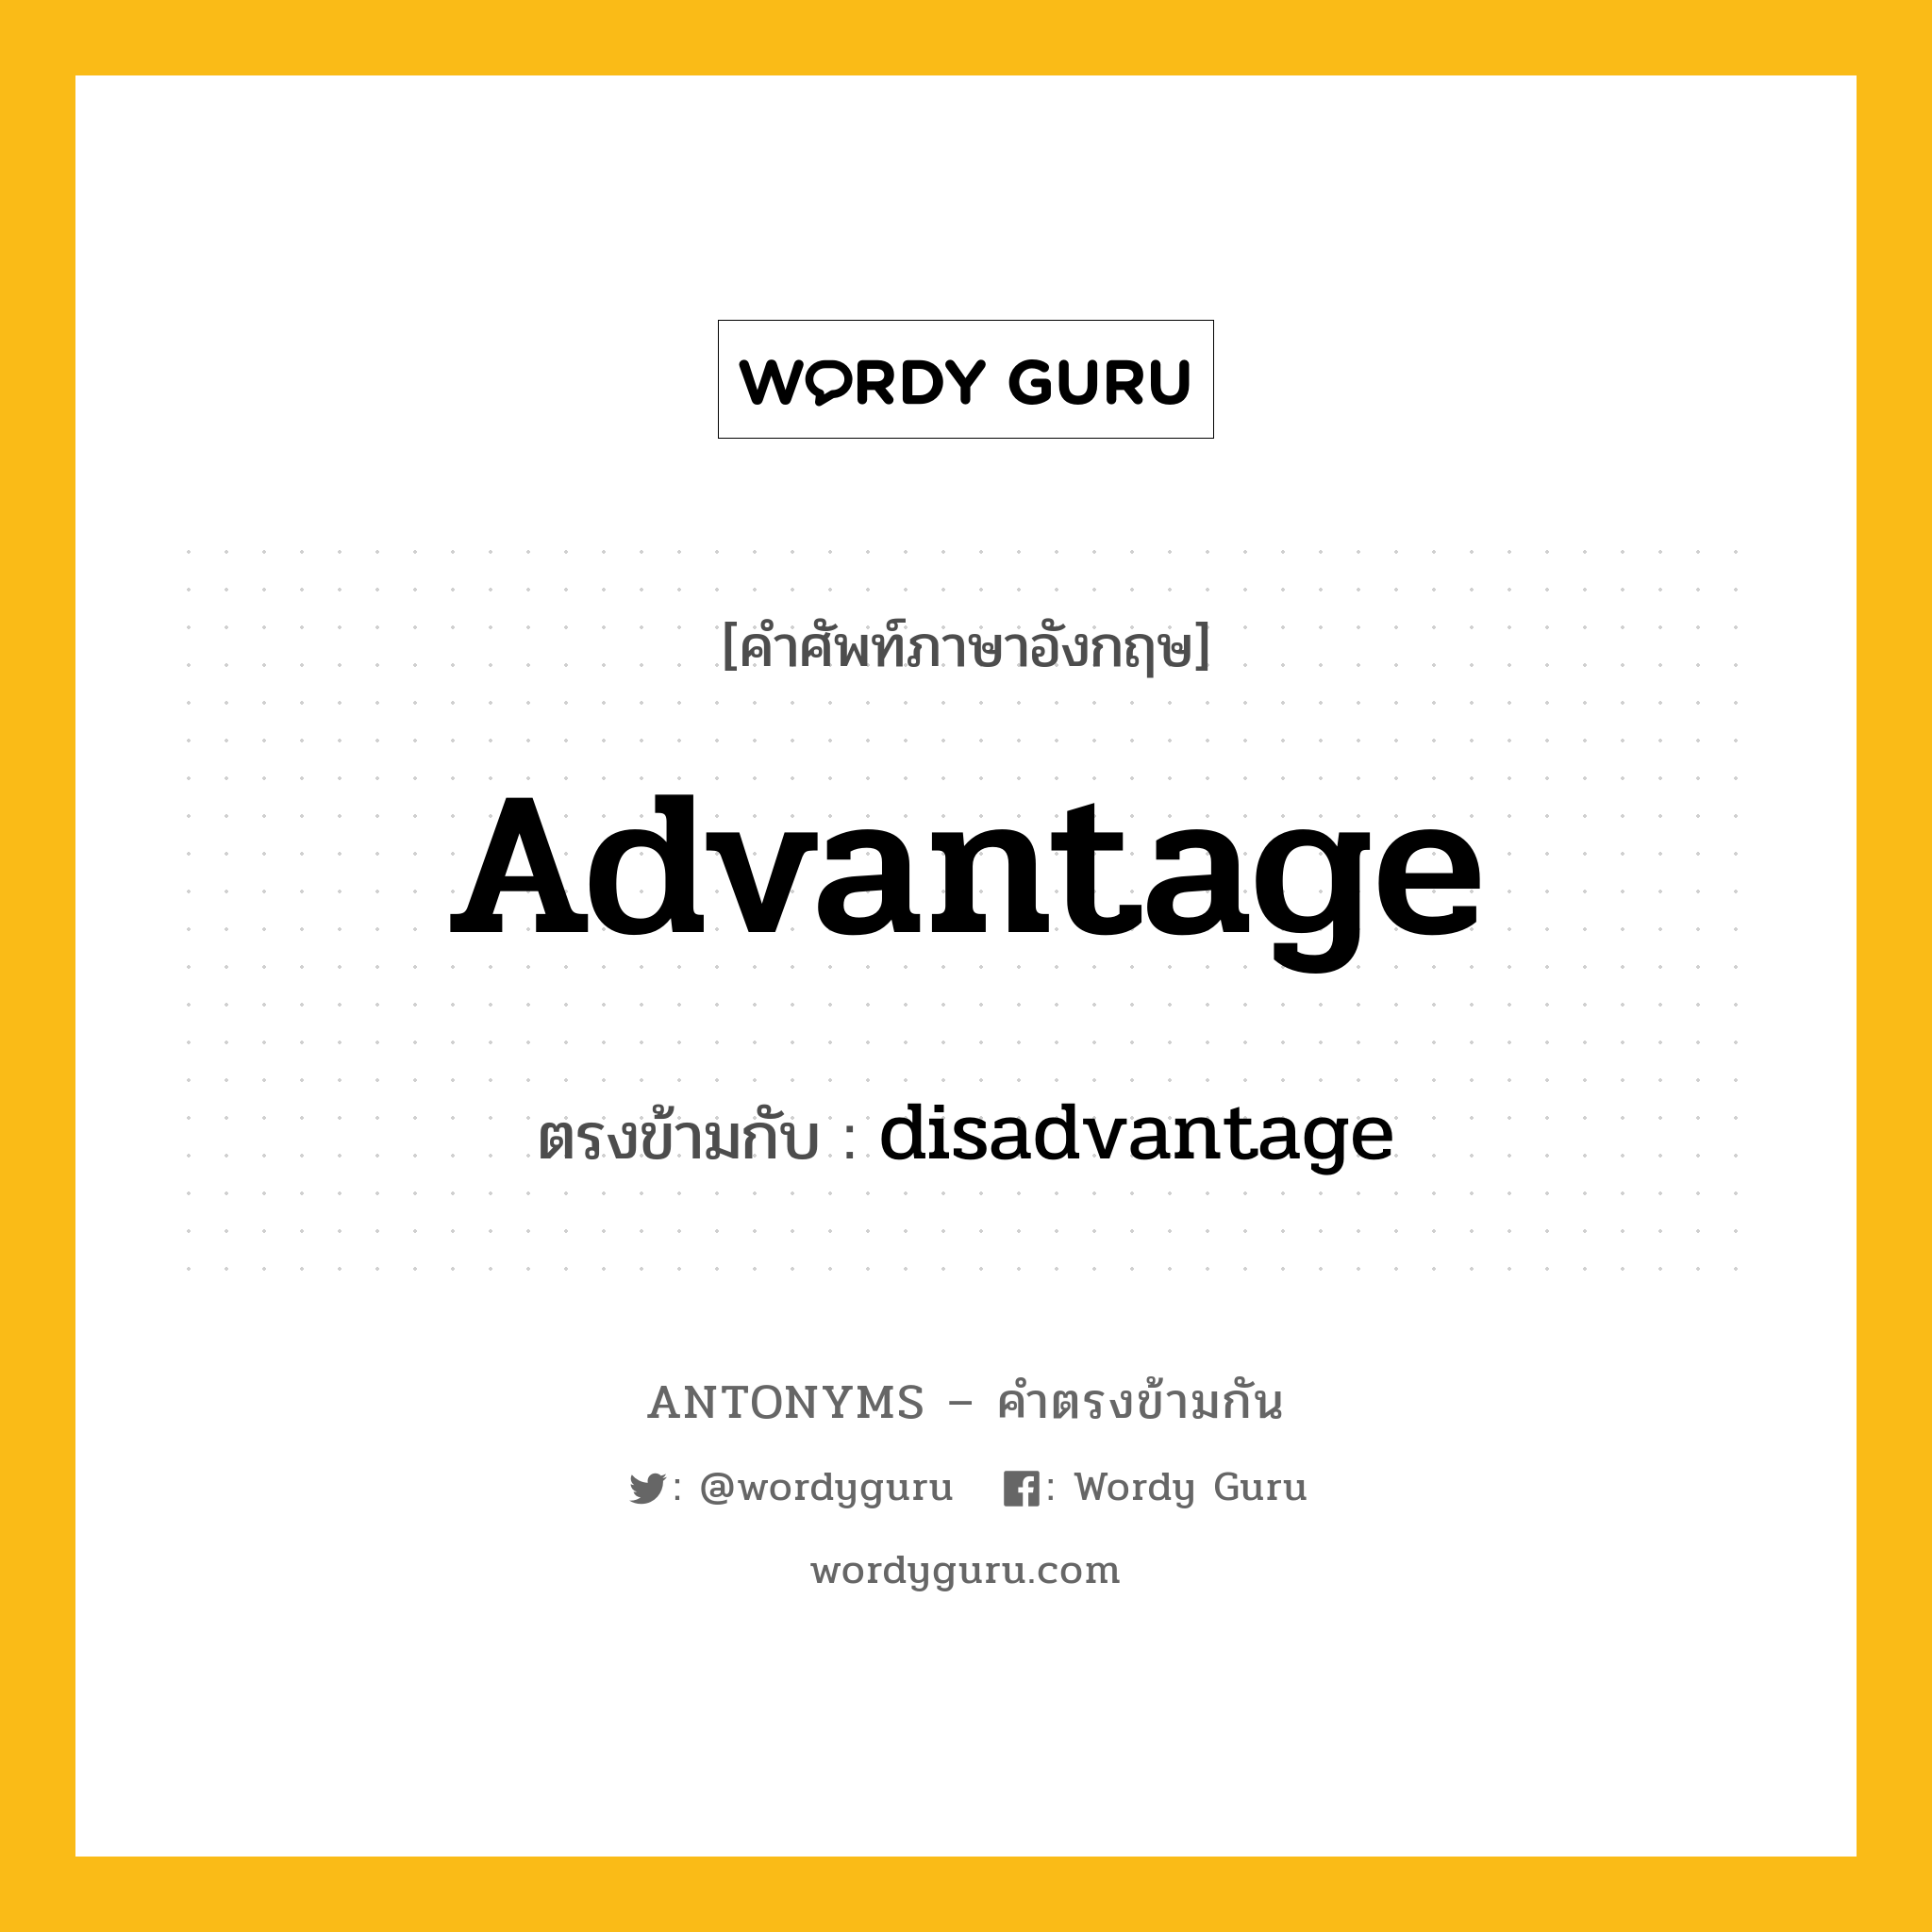 advantage เป็นคำตรงข้ามกับคำไหนบ้าง?, คำศัพท์ภาษาอังกฤษ advantage ตรงข้ามกับ disadvantage หมวด disadvantage